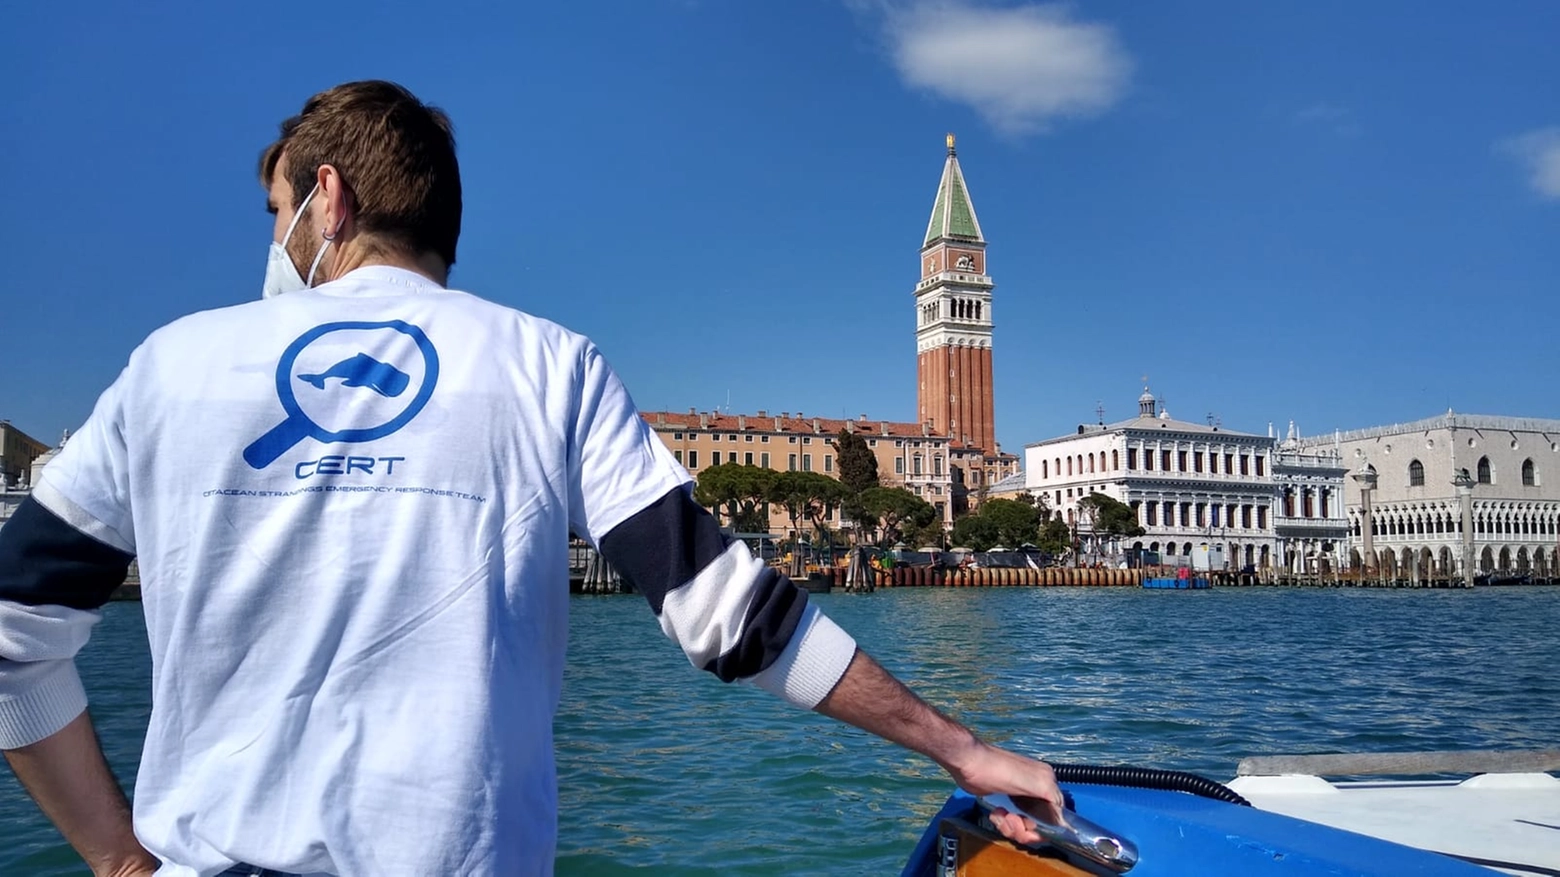 Delfini a Venezia, il Cert in azione